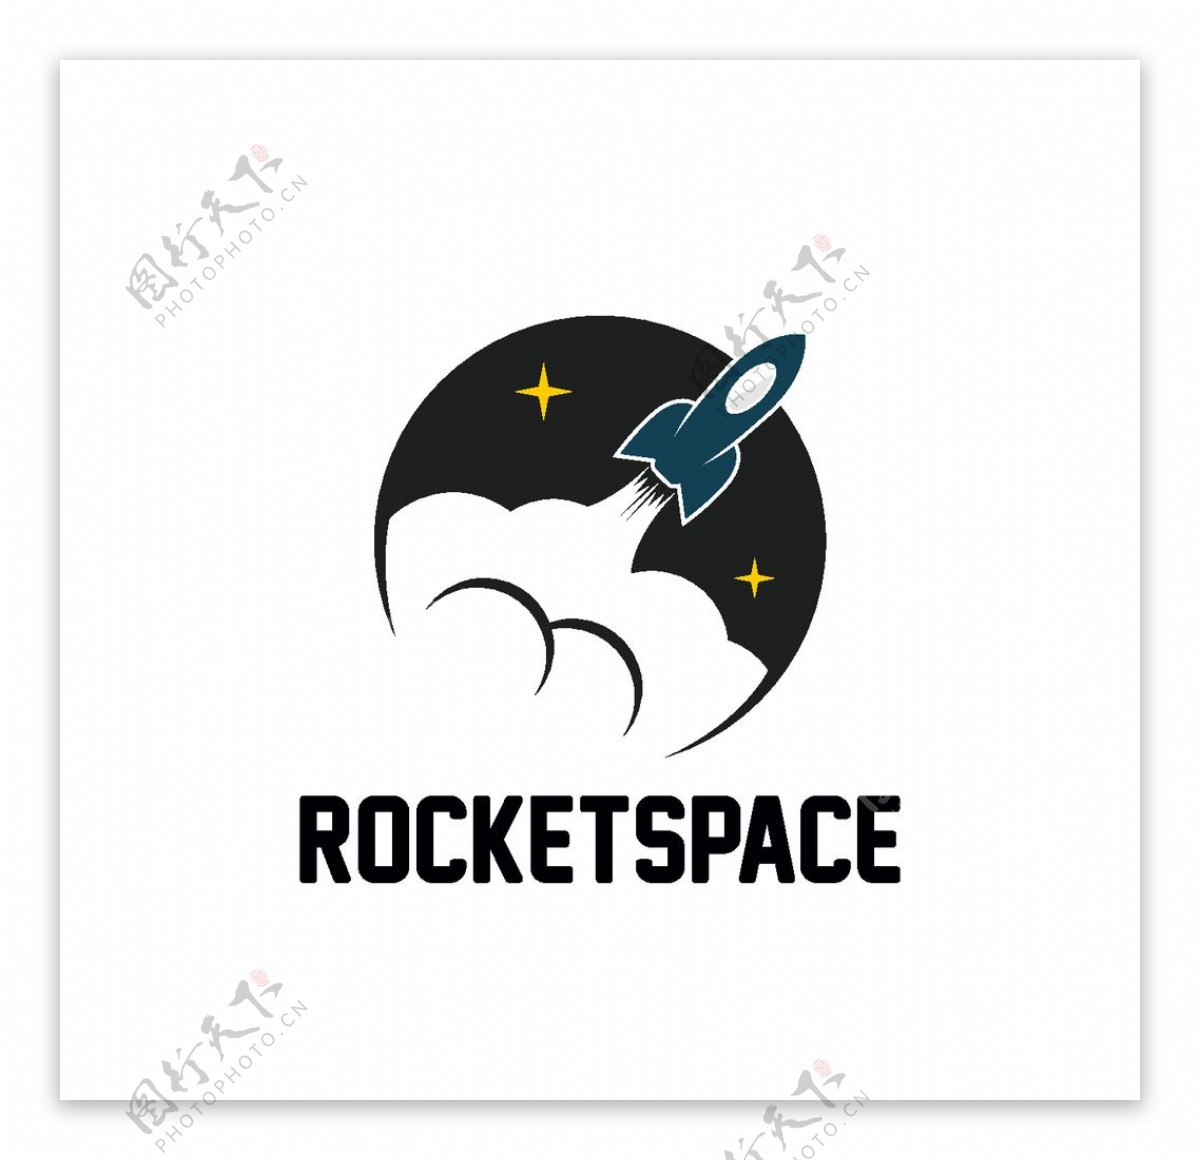 火箭标志